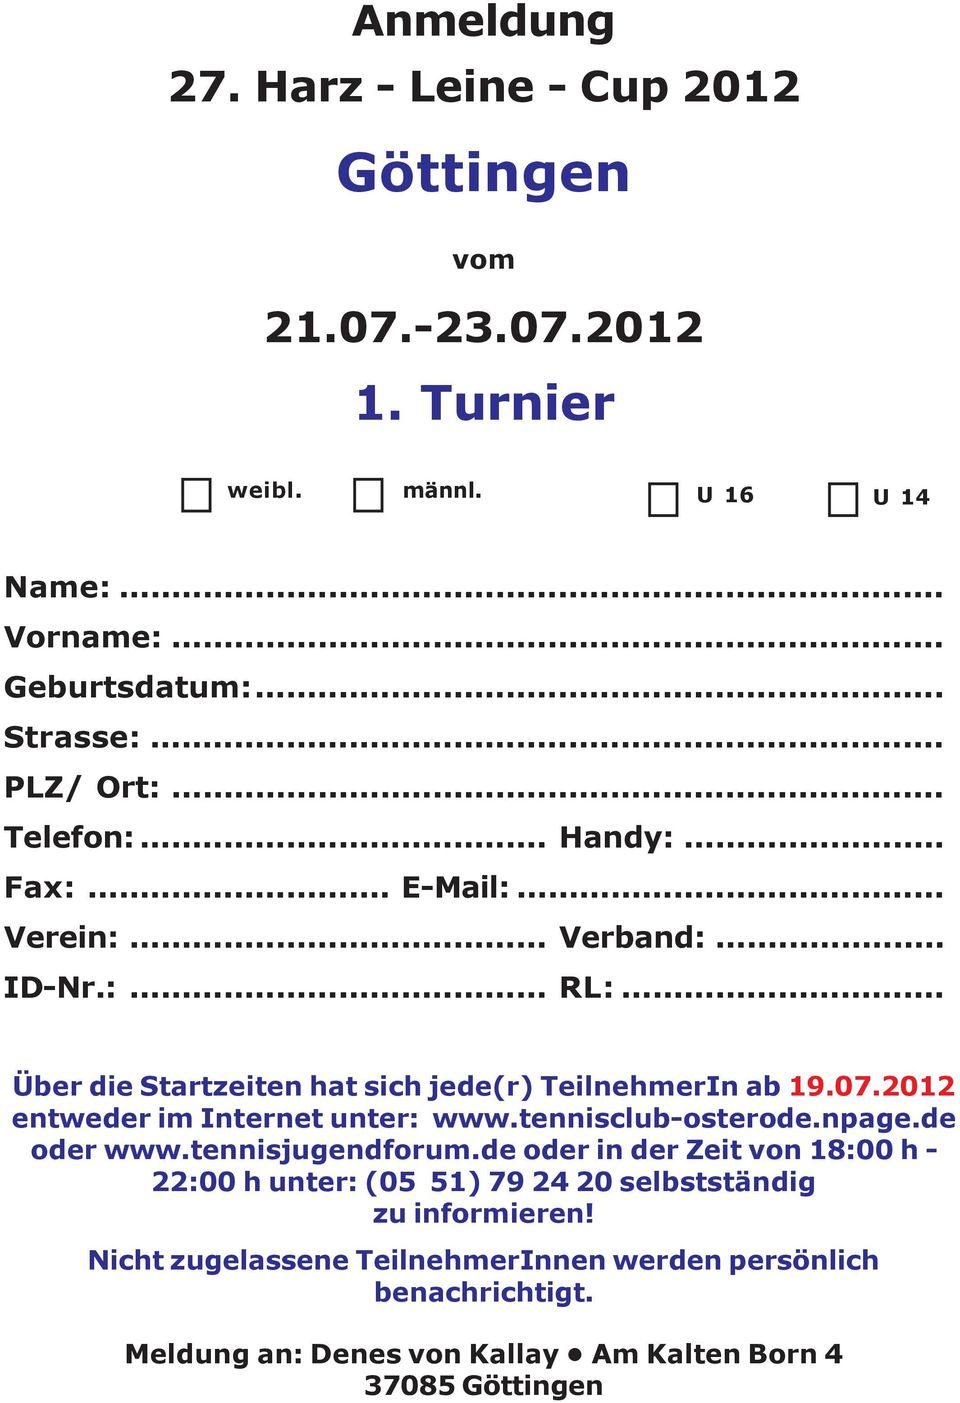 07.2012 entweder im Internet unter: www.tennisclub-osterode.npage.de oder www.tennisjugendforum.